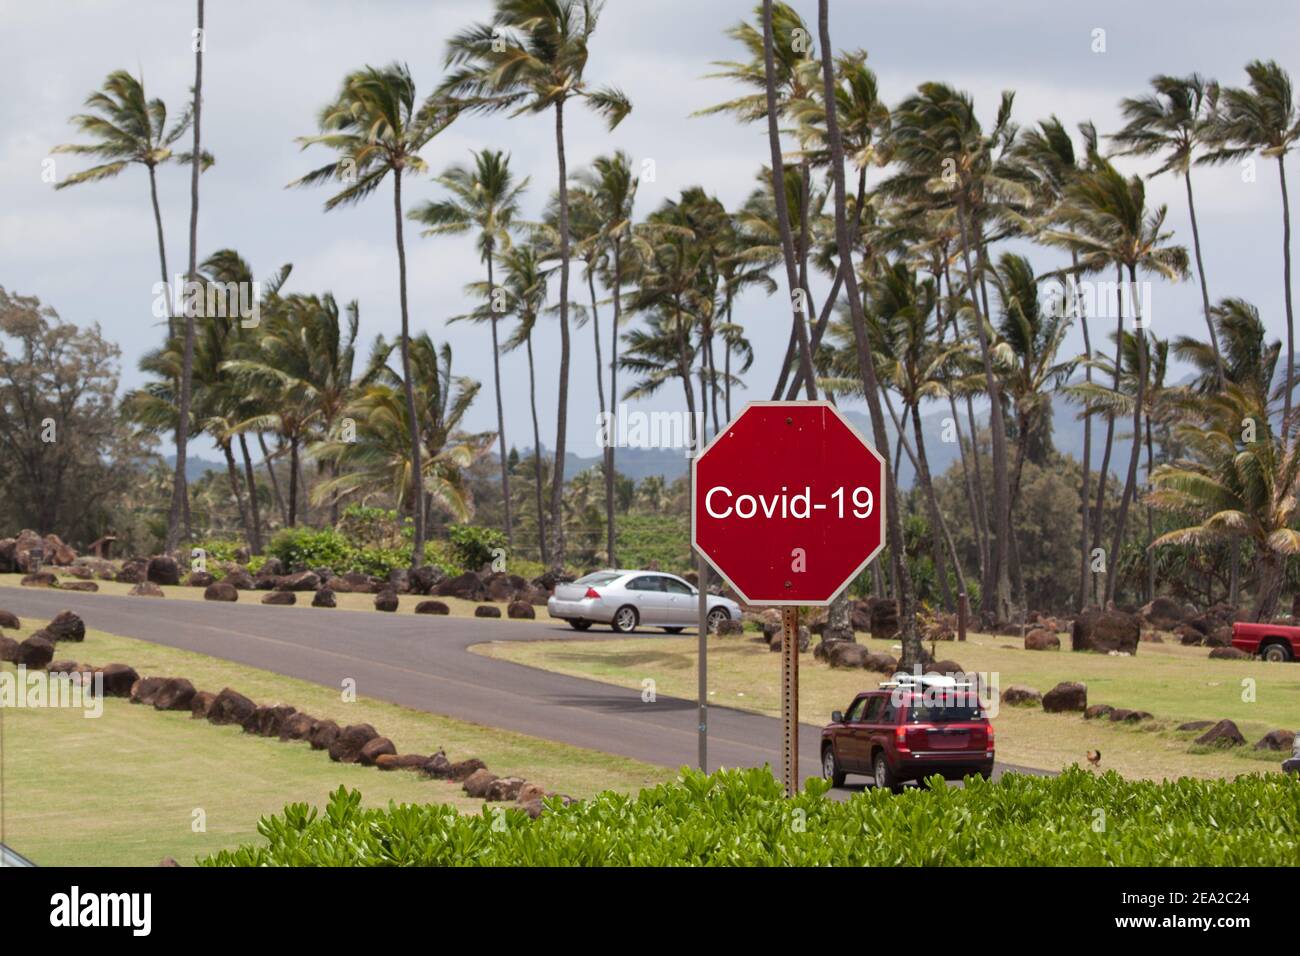 Covid-19 rotes Warnschild auf dem Hintergrund der Palmen der tropischen Insel Kauai, Hawaii-Inseln. Coronavirus Epidemie Konzept in USA Hawai Stockfoto